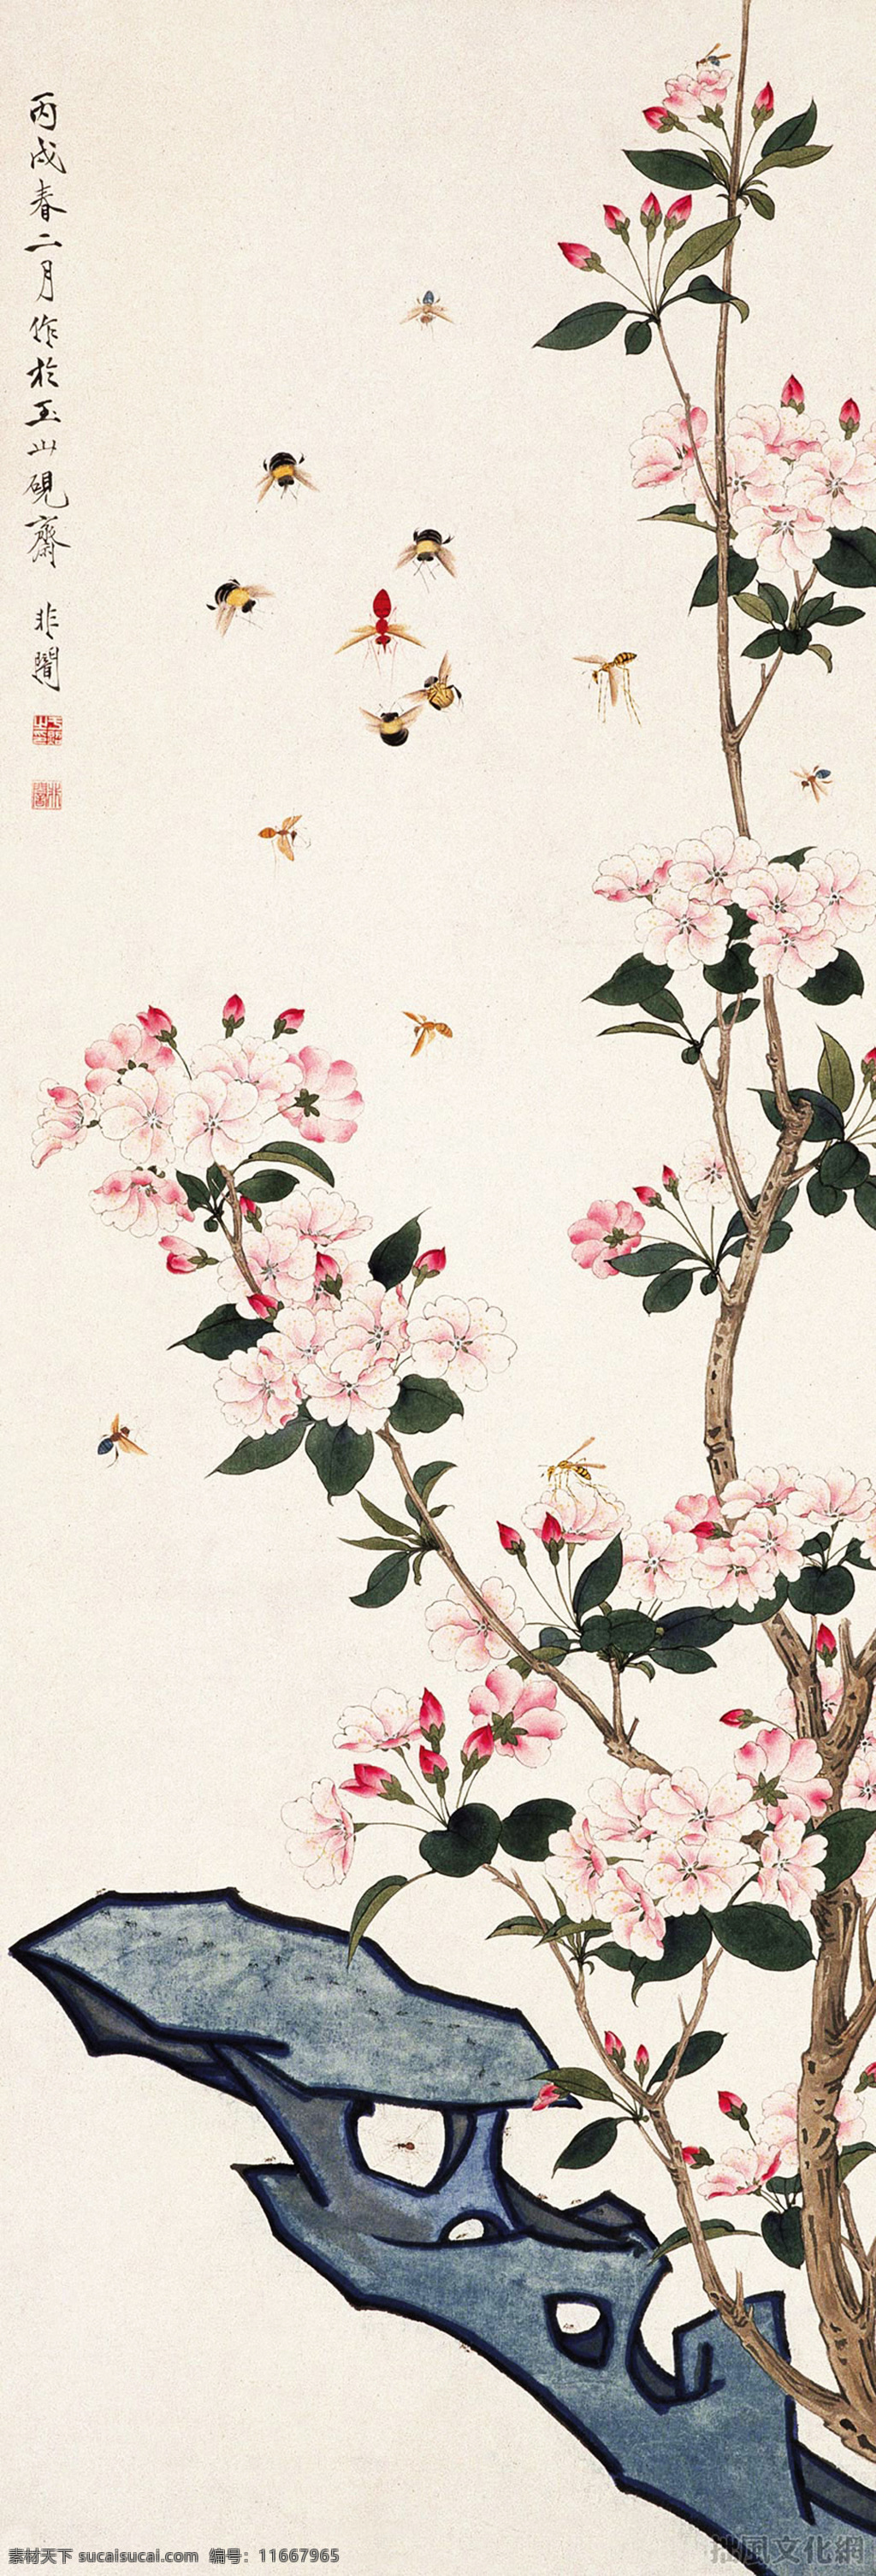 于非闇 国画 桃花蜜蜂 桃花 蜜蜂 蚂蜂 黄蜂 岩石 桃树 树枝 花朵 工笔 绘画书法 文化艺术